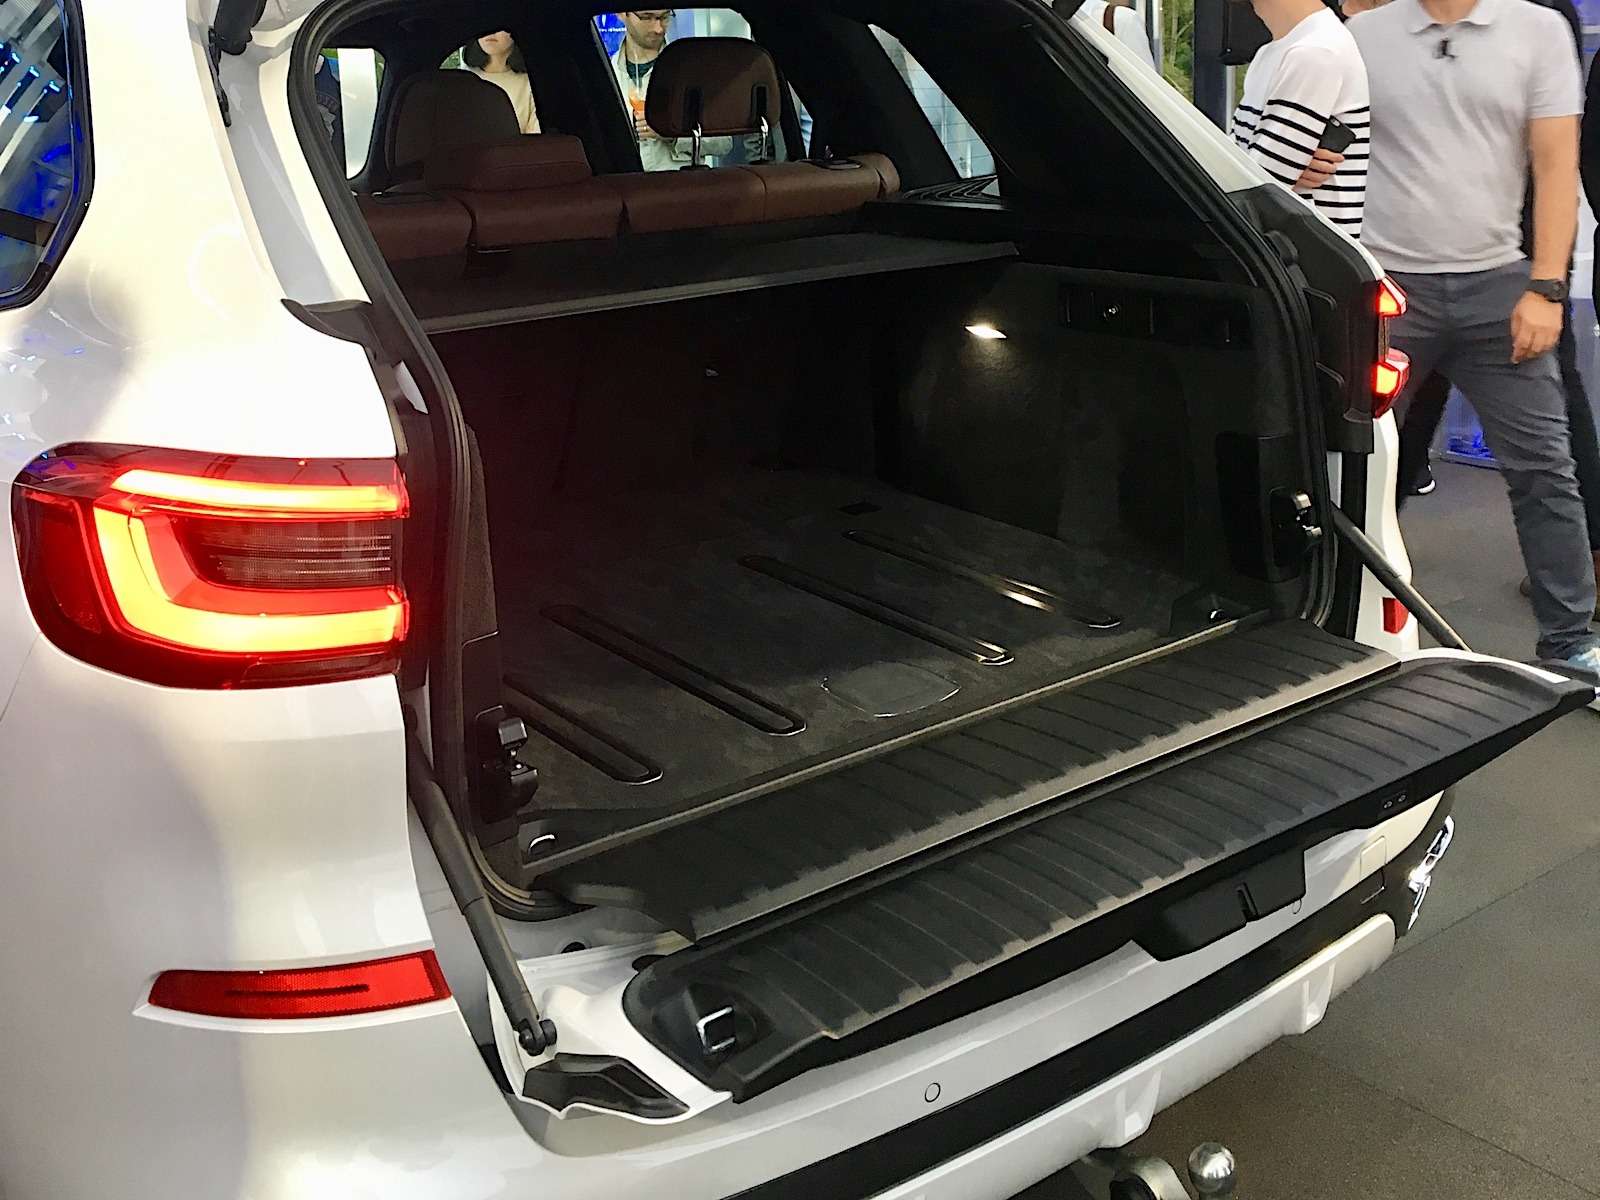 Абсолютно новый BMW X5 всплыл в Москве. Задолго до официальной премьеры! — фото 889844